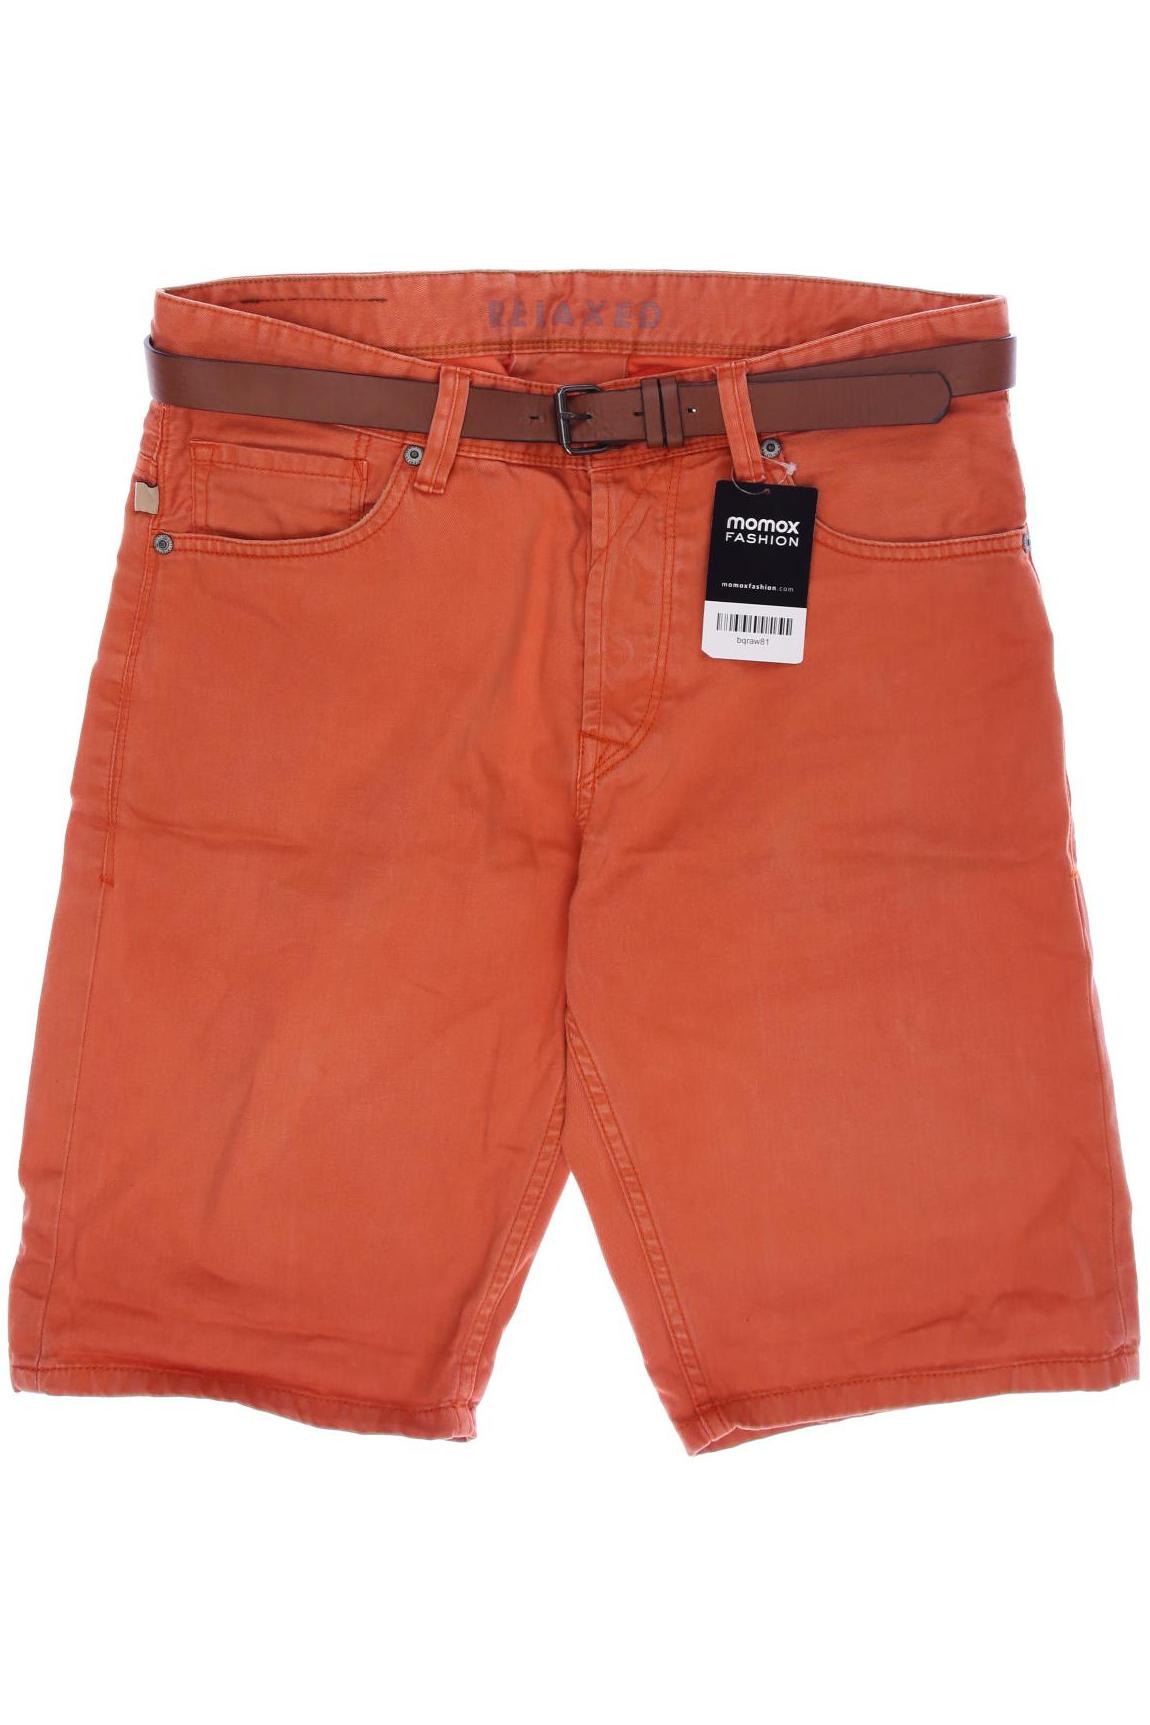 Tom Tailor Herren Shorts, orange, Gr. 46 von Tom Tailor